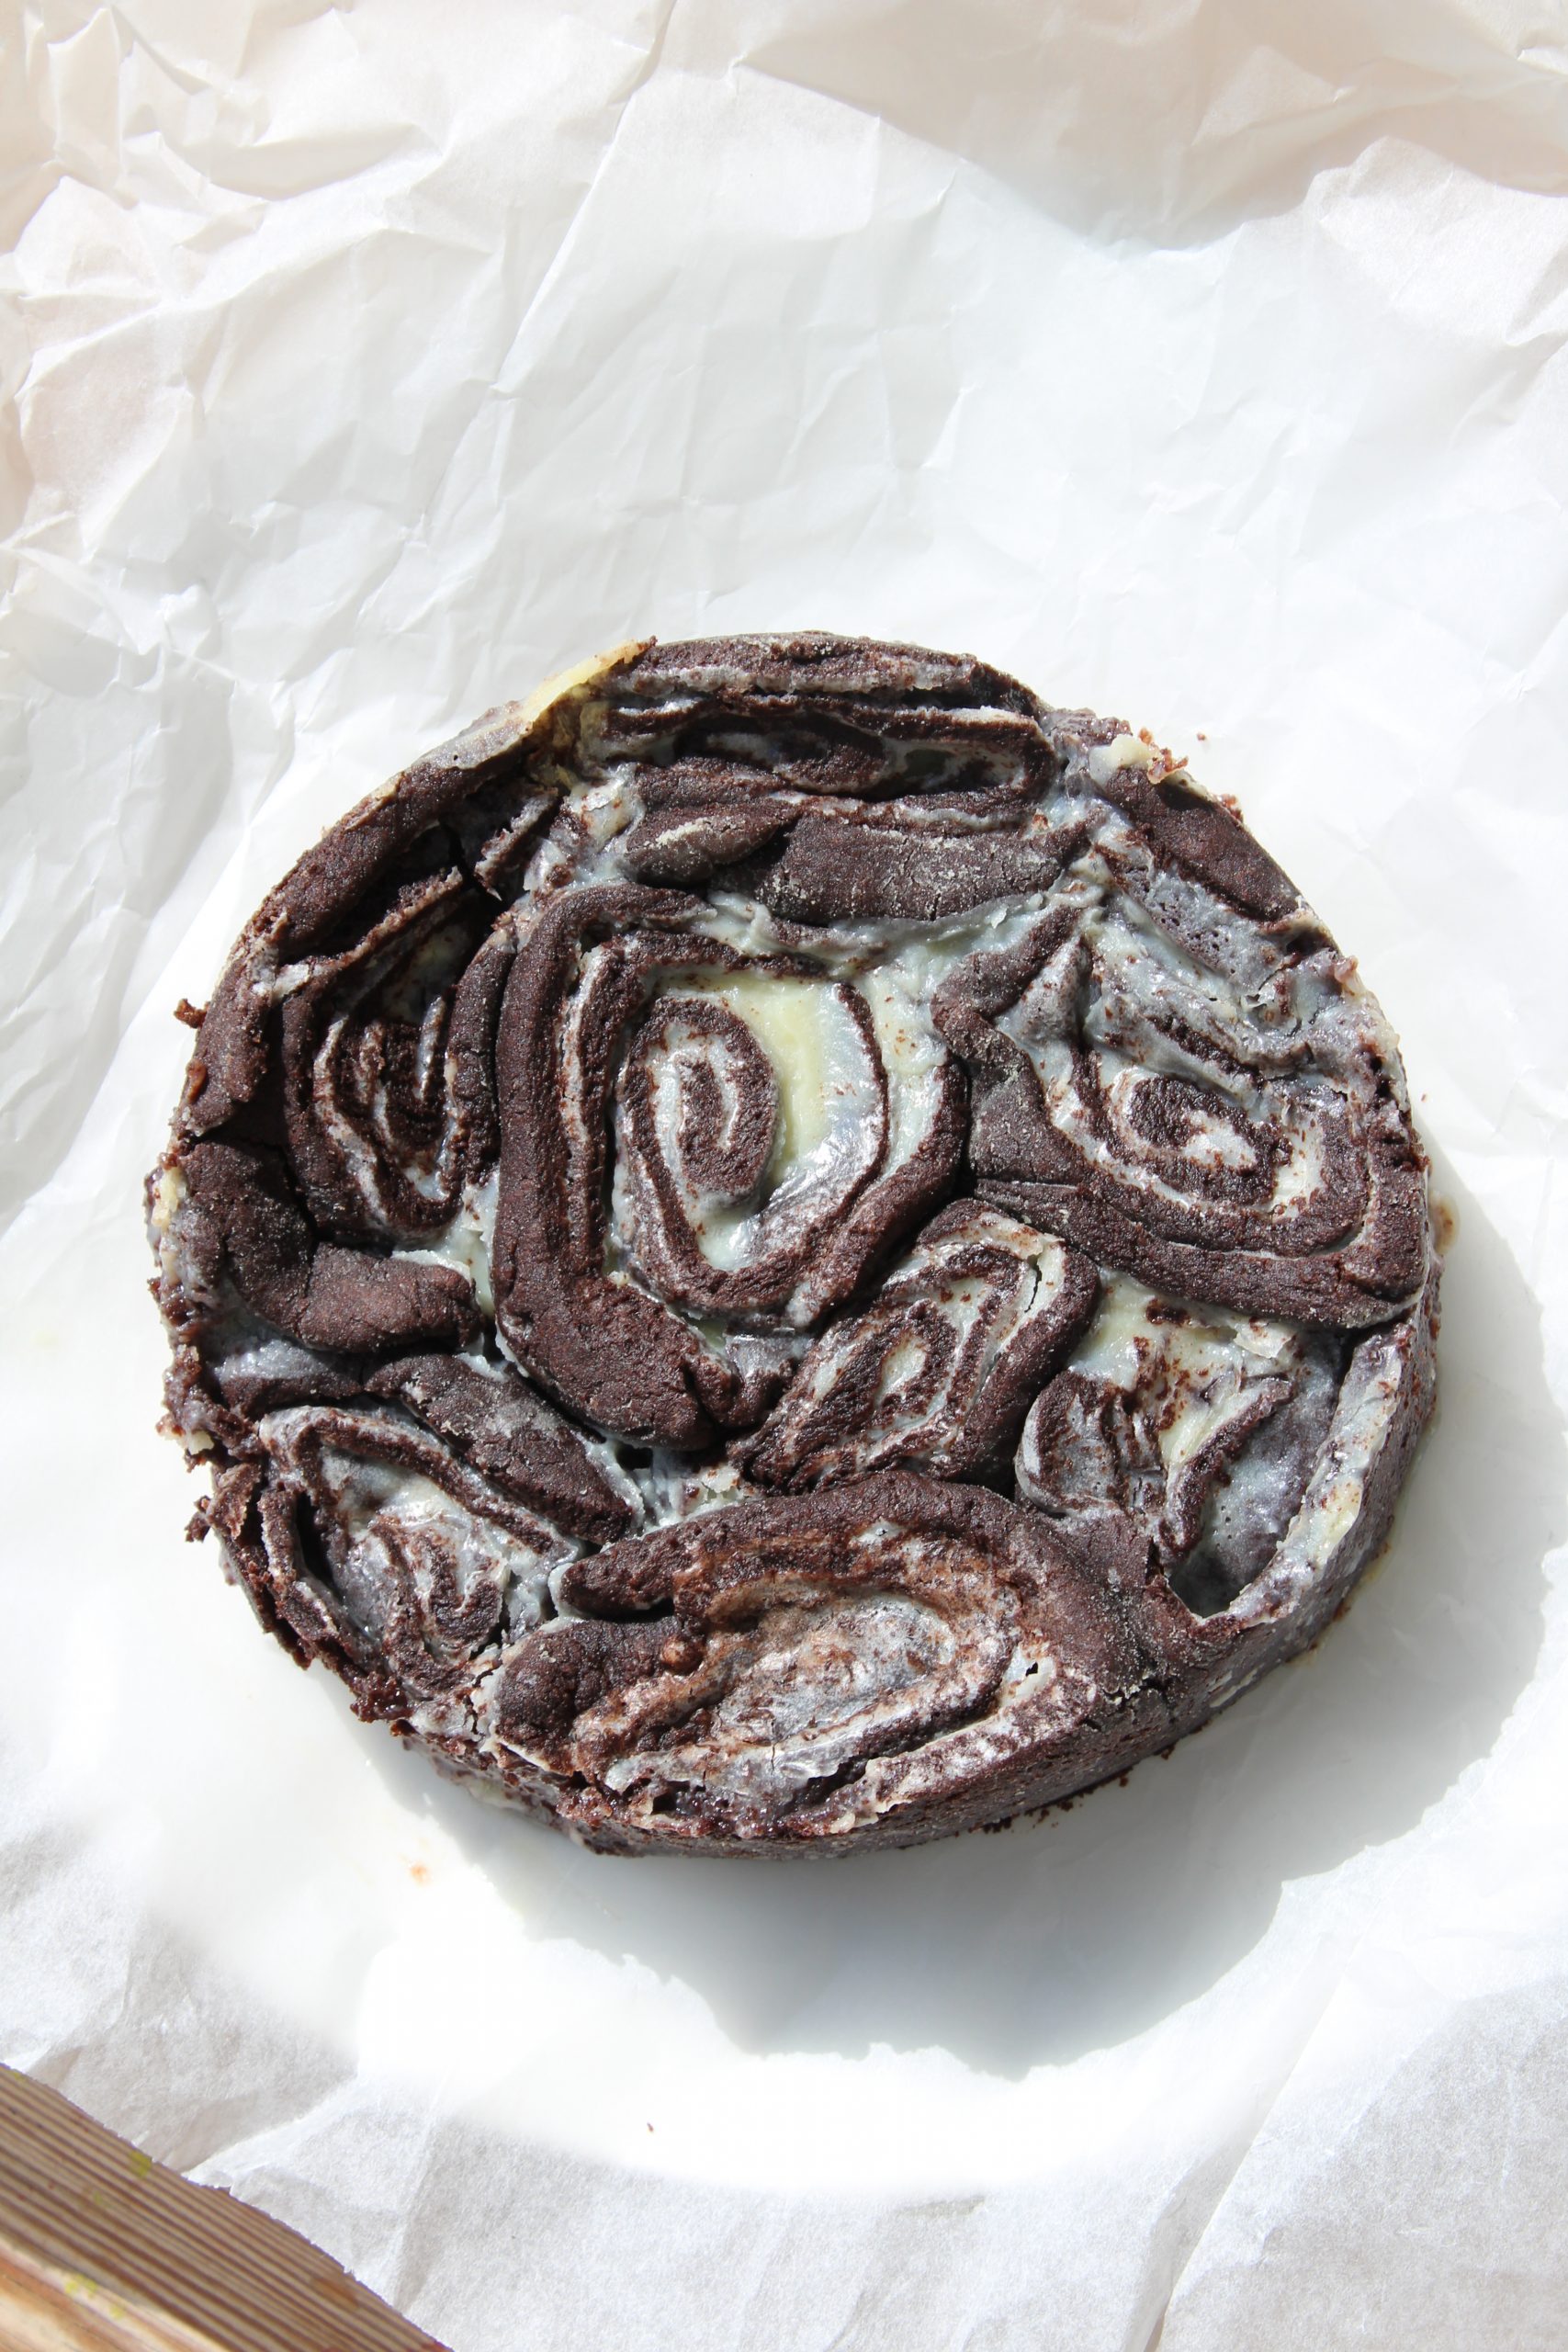 מתכון לעוגיות אמסטרדם: עוגת עוגיות שושנים בצק שוקולד קקאו במילוי גנאש שוקולד לבן (עוגת עוגיות אמסטרדם)